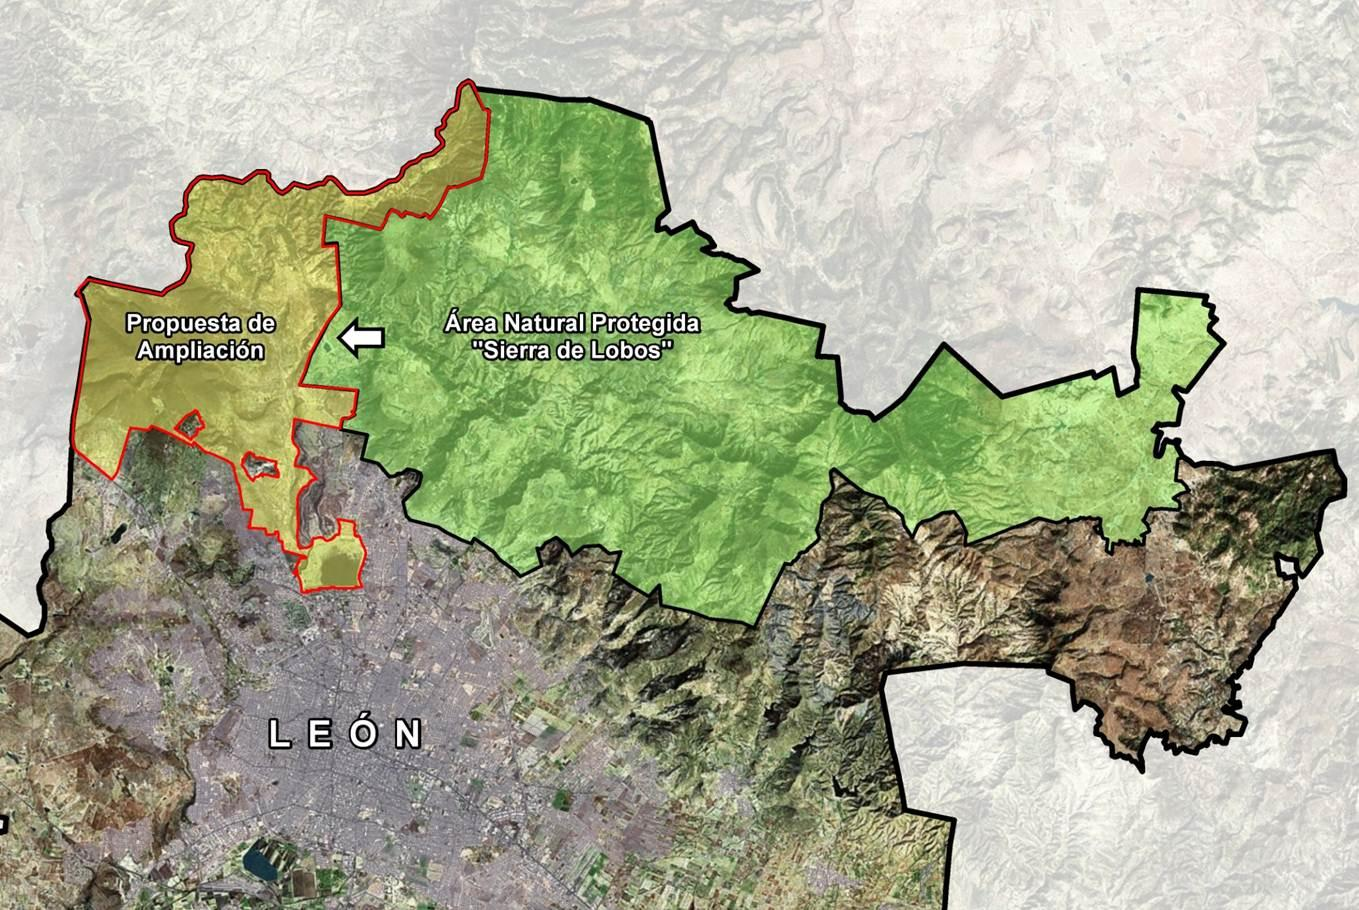 Estudios Actualización del área natural protegida Sierra de Lobos UMA s, zona poniente Conservar y preservar la zona forestal de esta área natural, a través de programas ambientales que